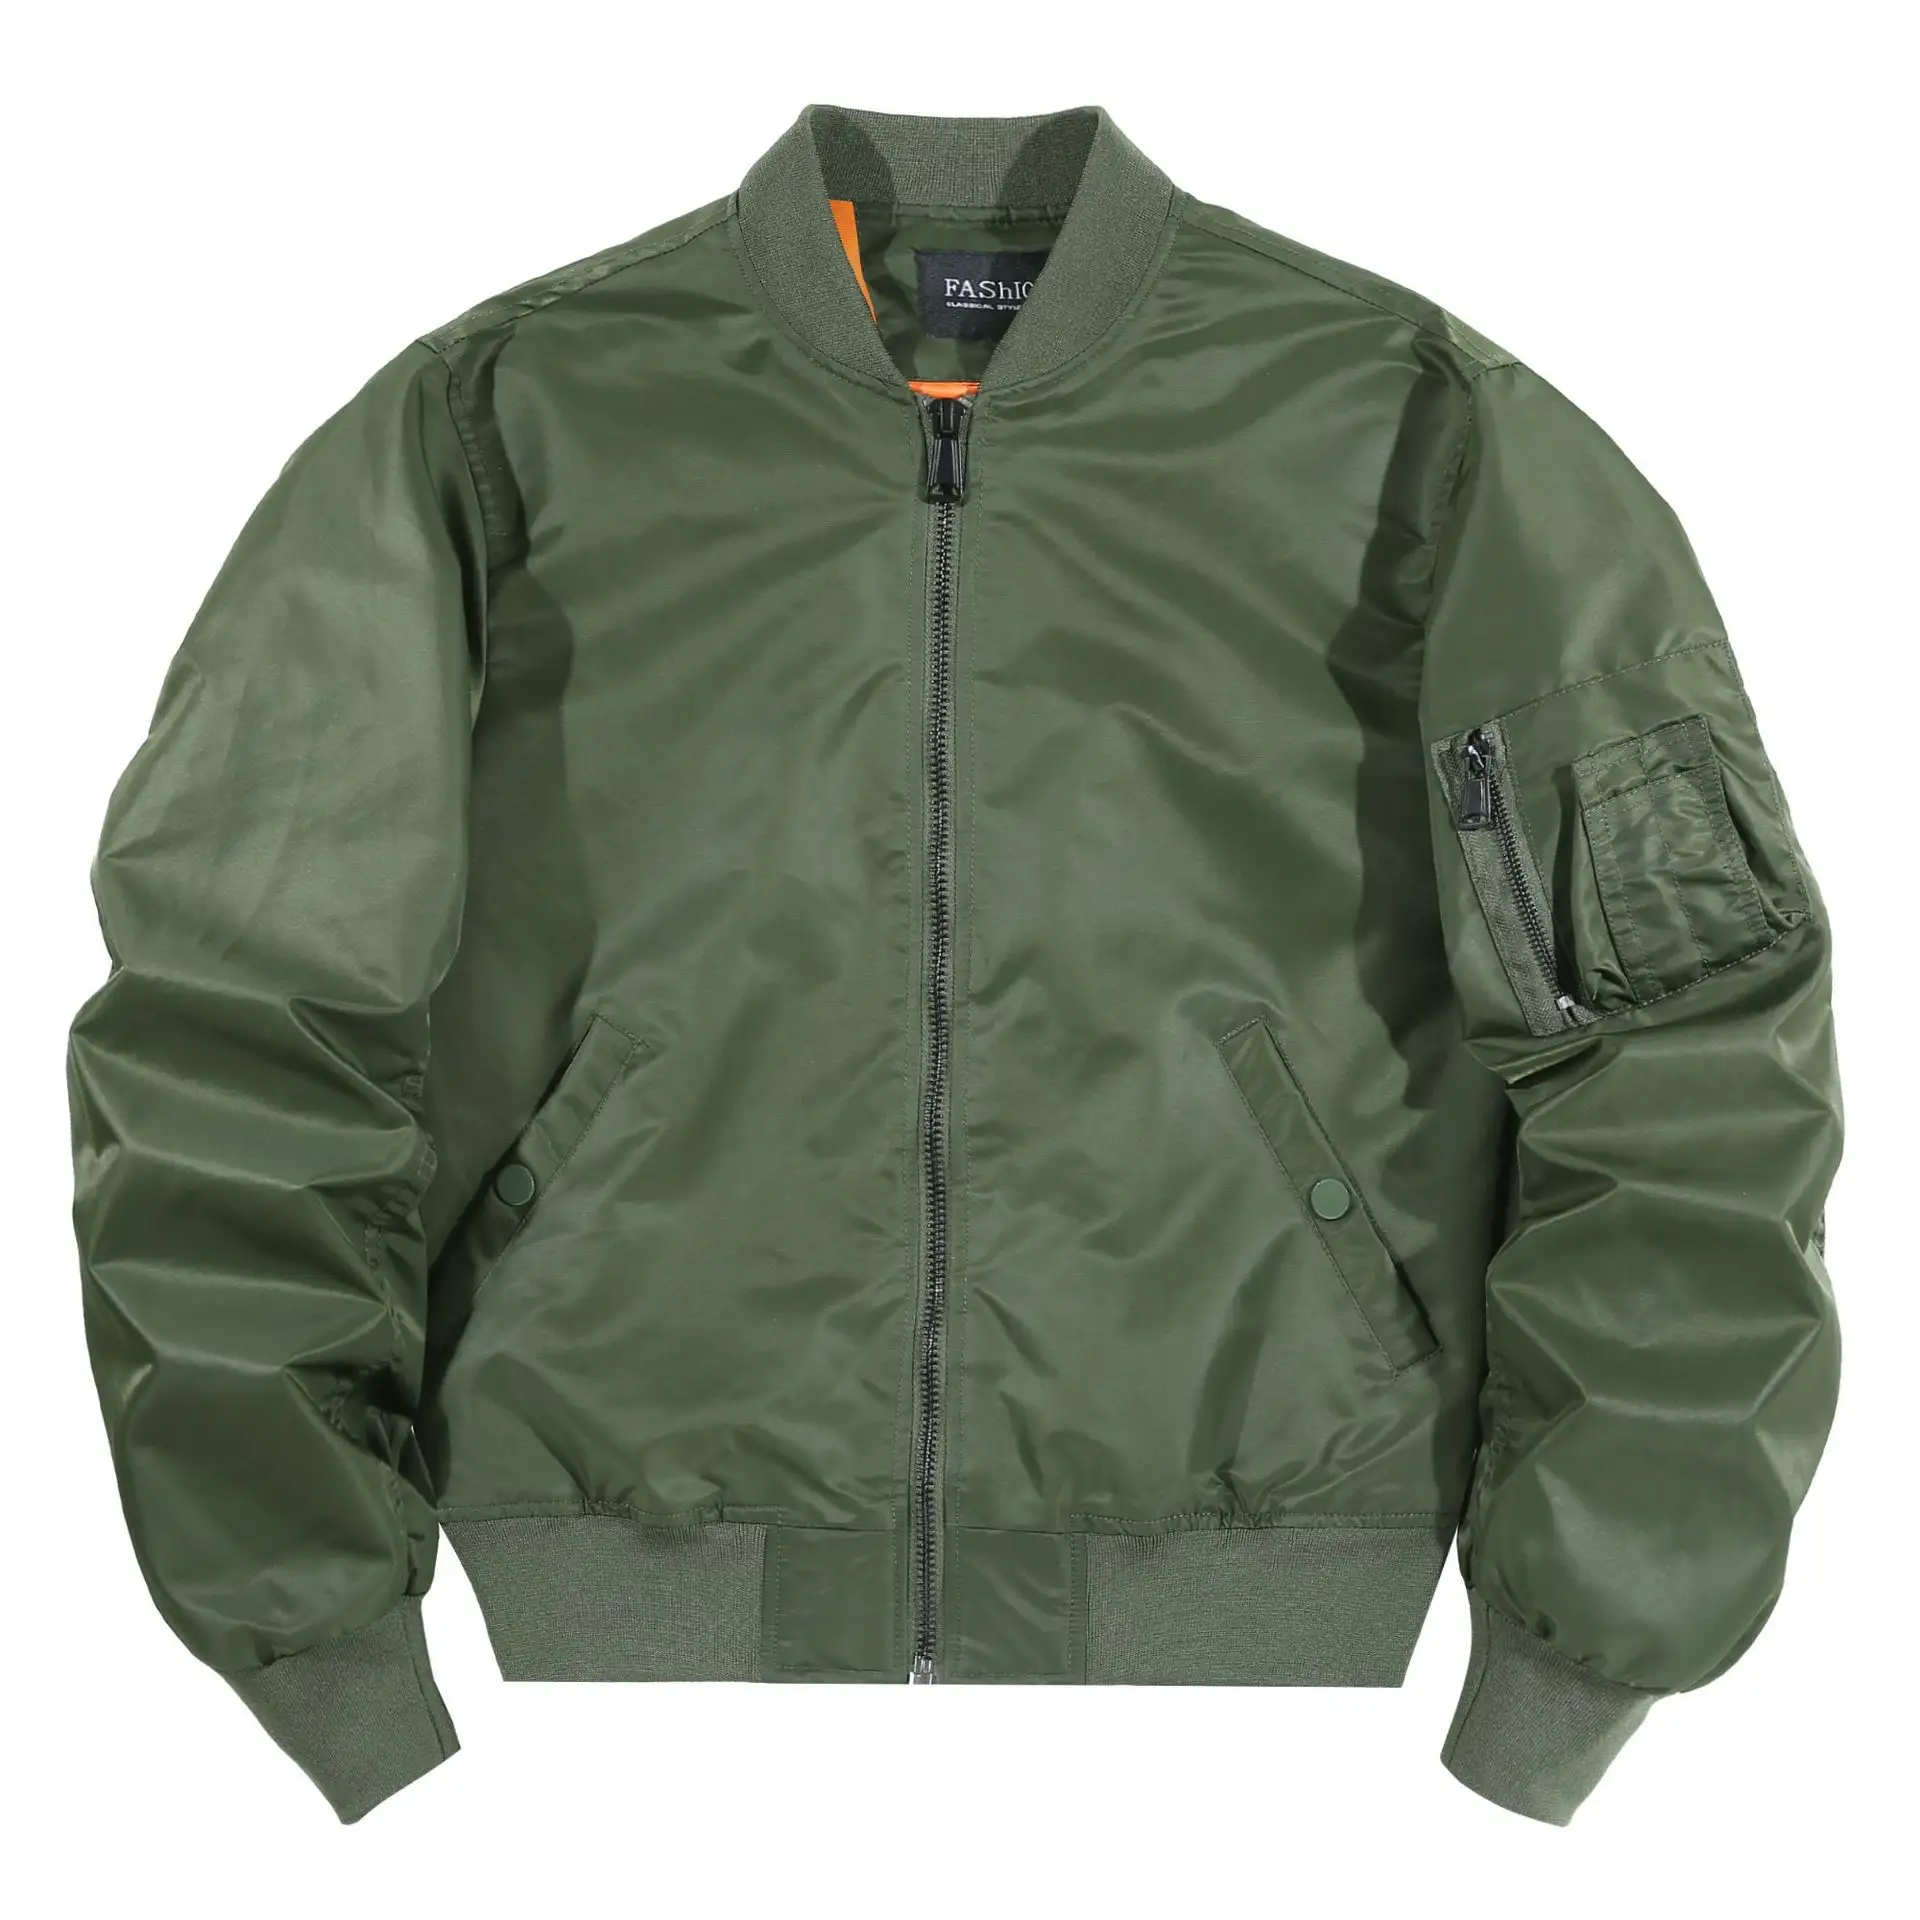 OEM diseño personalizado chaqueta de los hombres bordado de nylon MA1 vuelo personalizado chaqueta de bombardero para los hombres